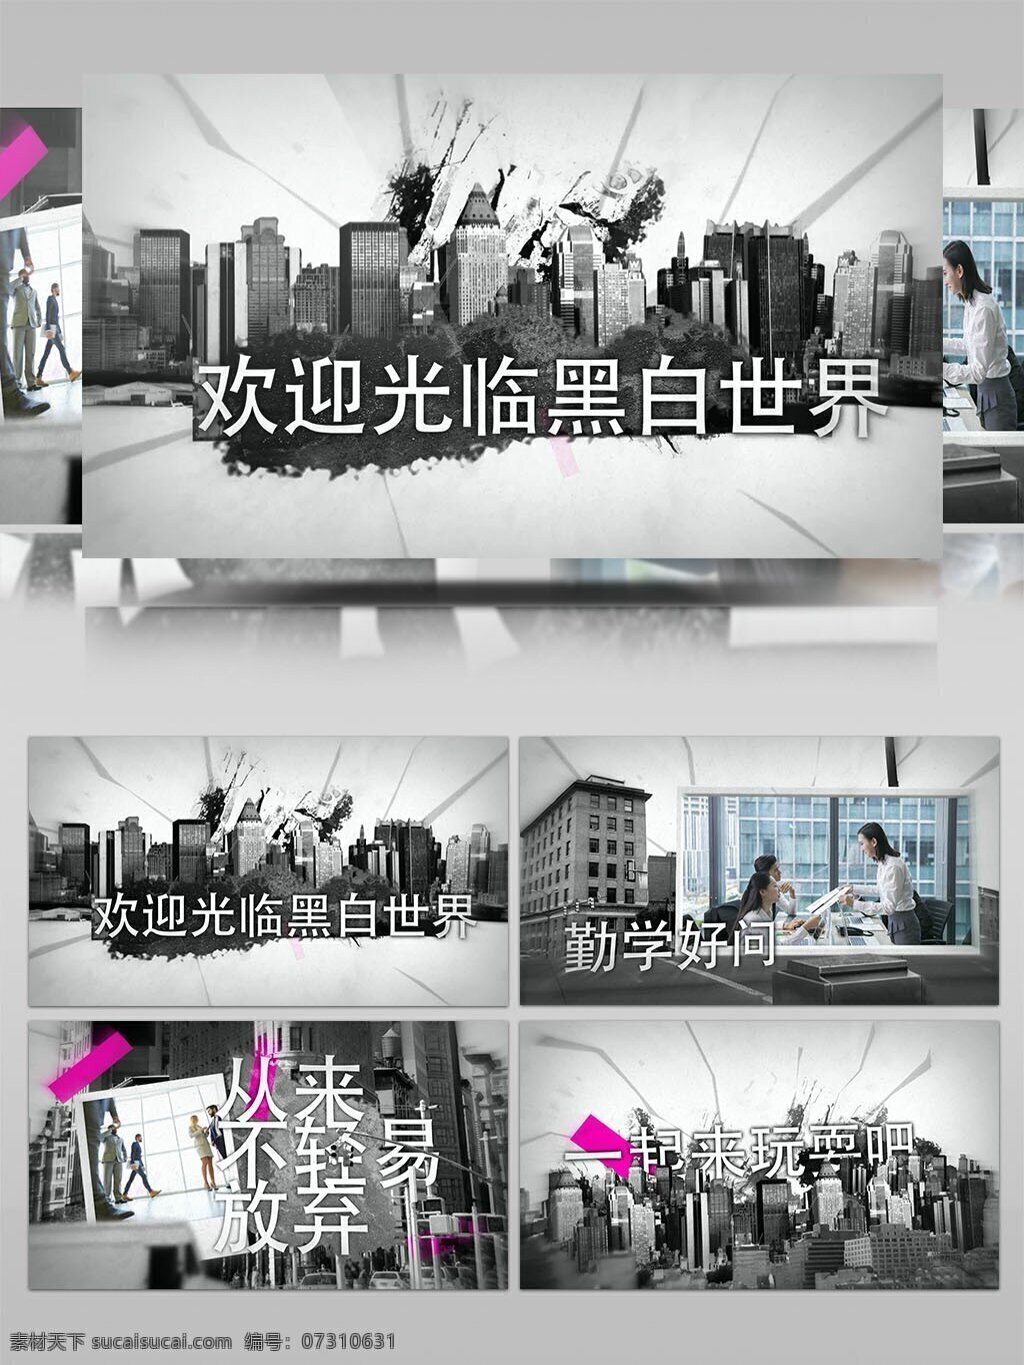 黑白 世界 视频 ae 模板 黑白背景 展示宣传 生活场景 ae模板 aep 图文展示